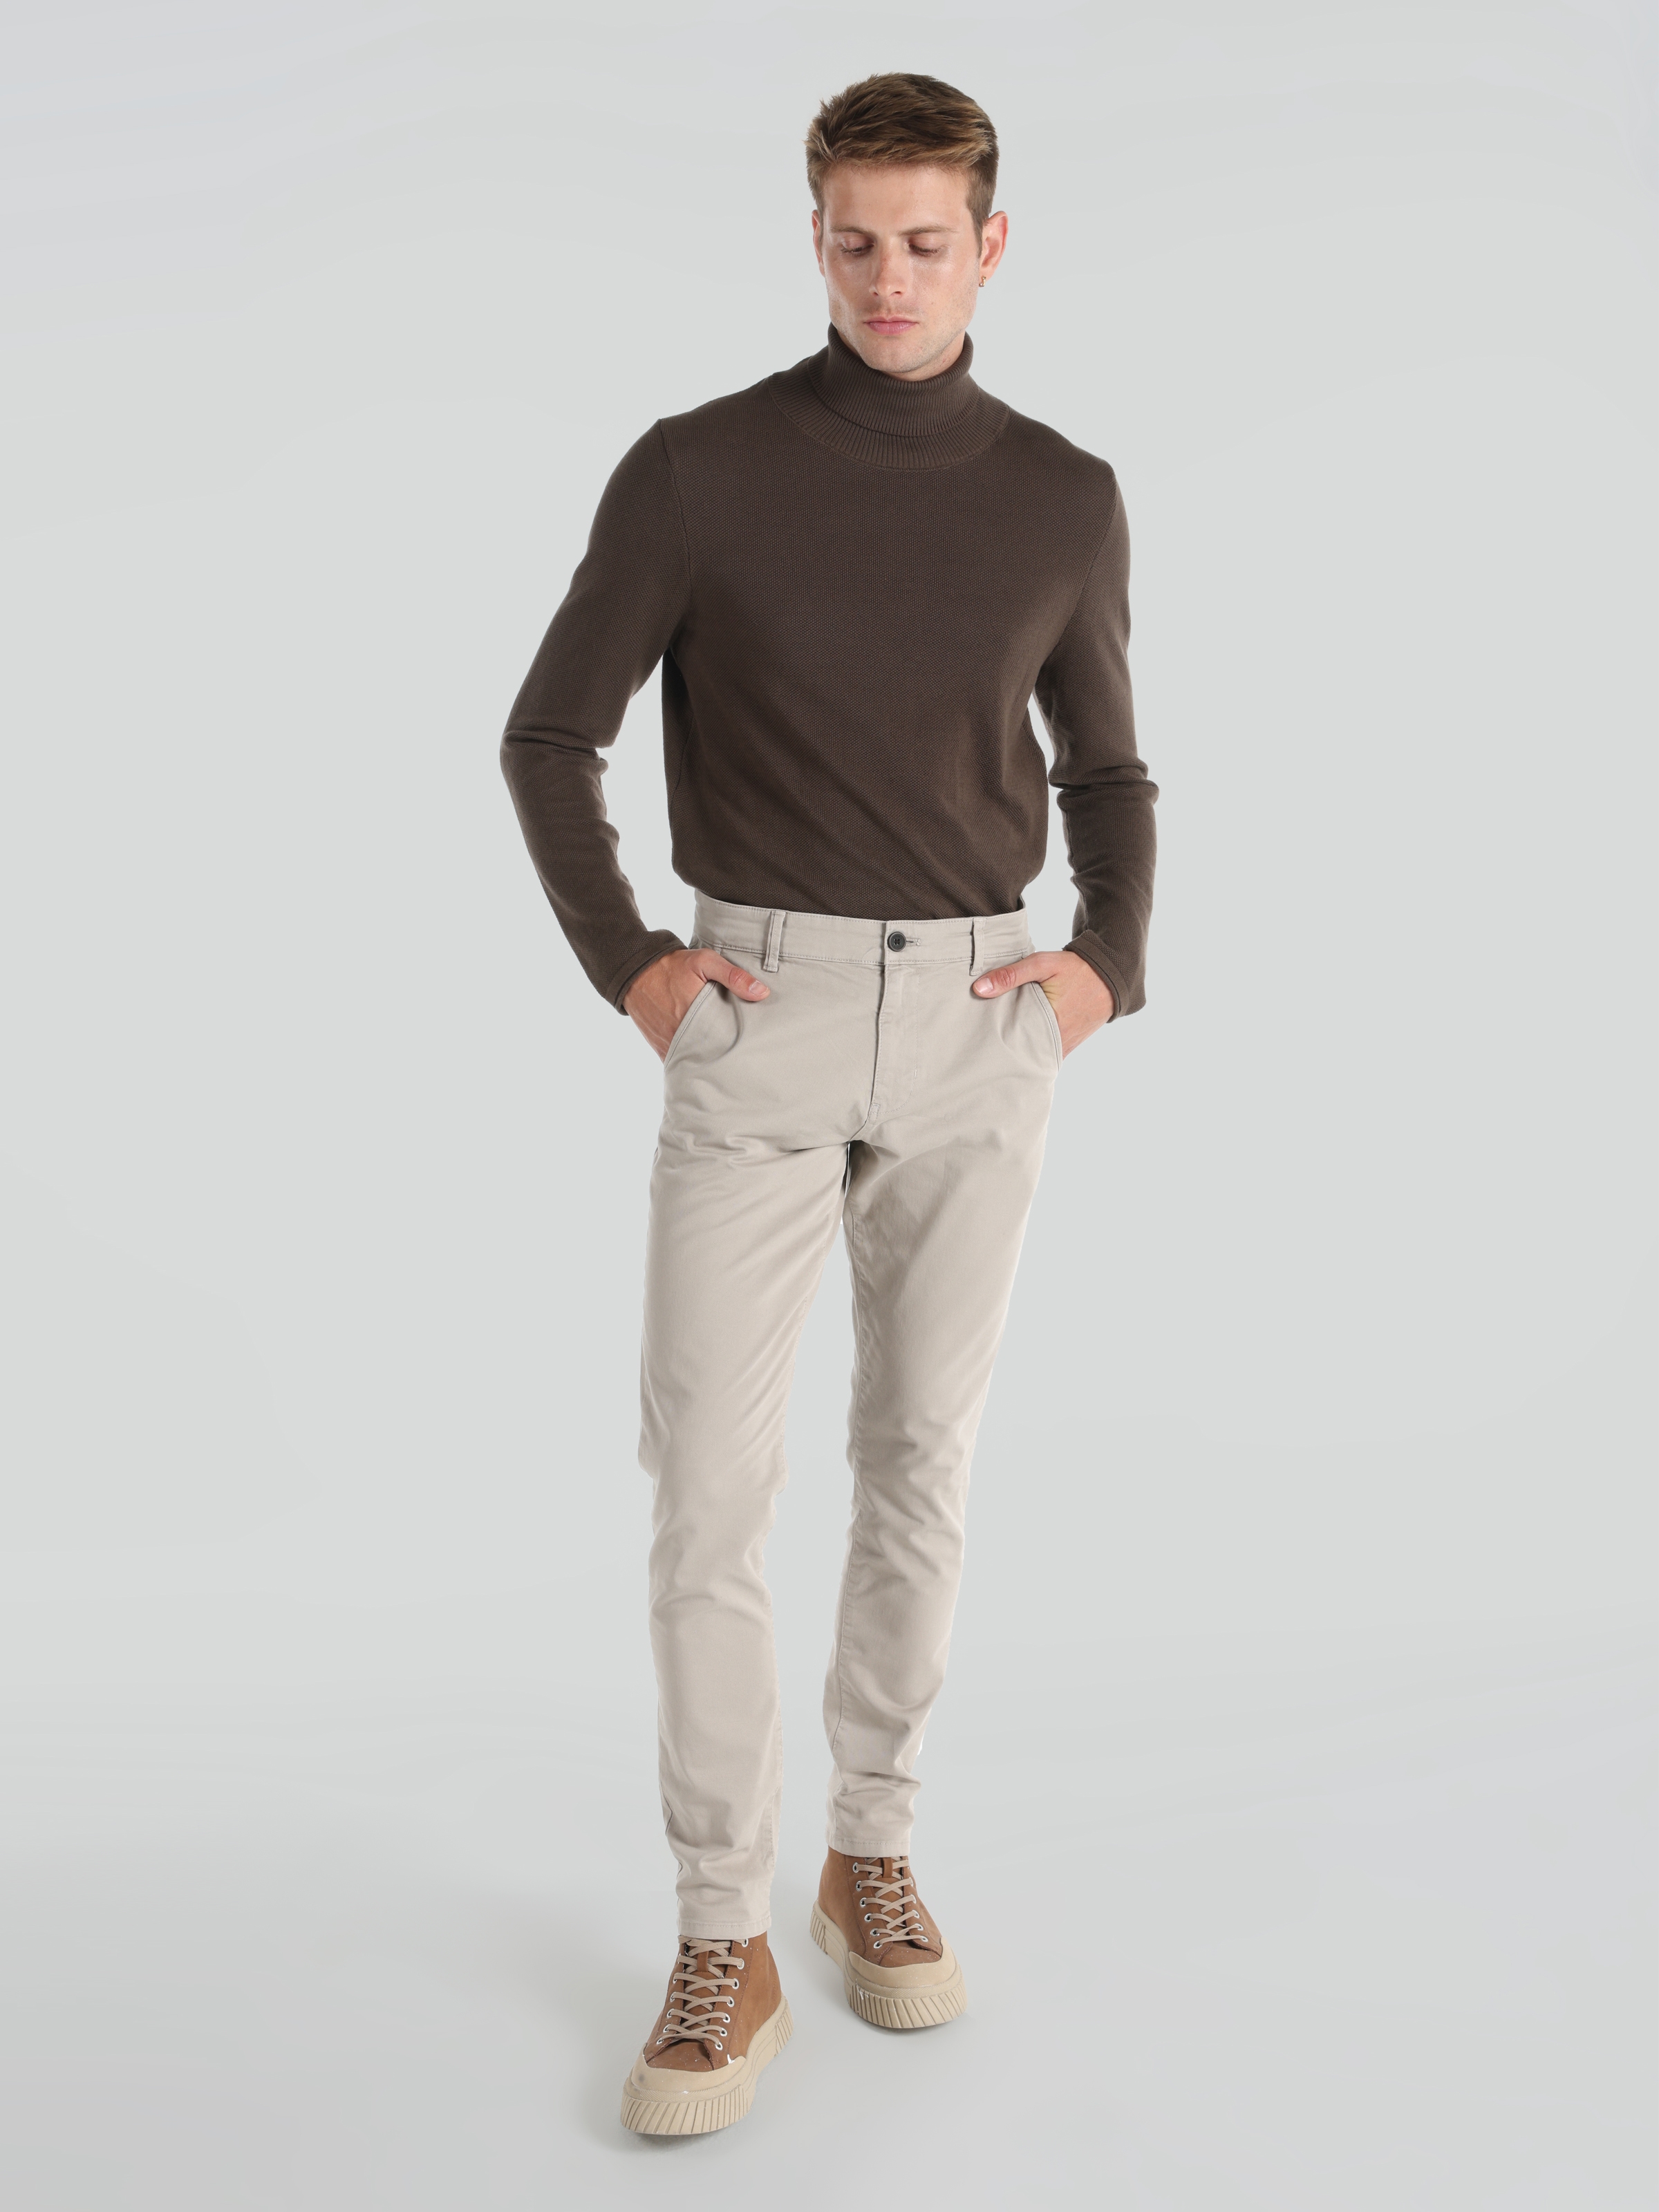 Afficher les détails de Pantalon Beige Pour Homme, Coupe Slim, Taille Moyenne, Jambe Droite